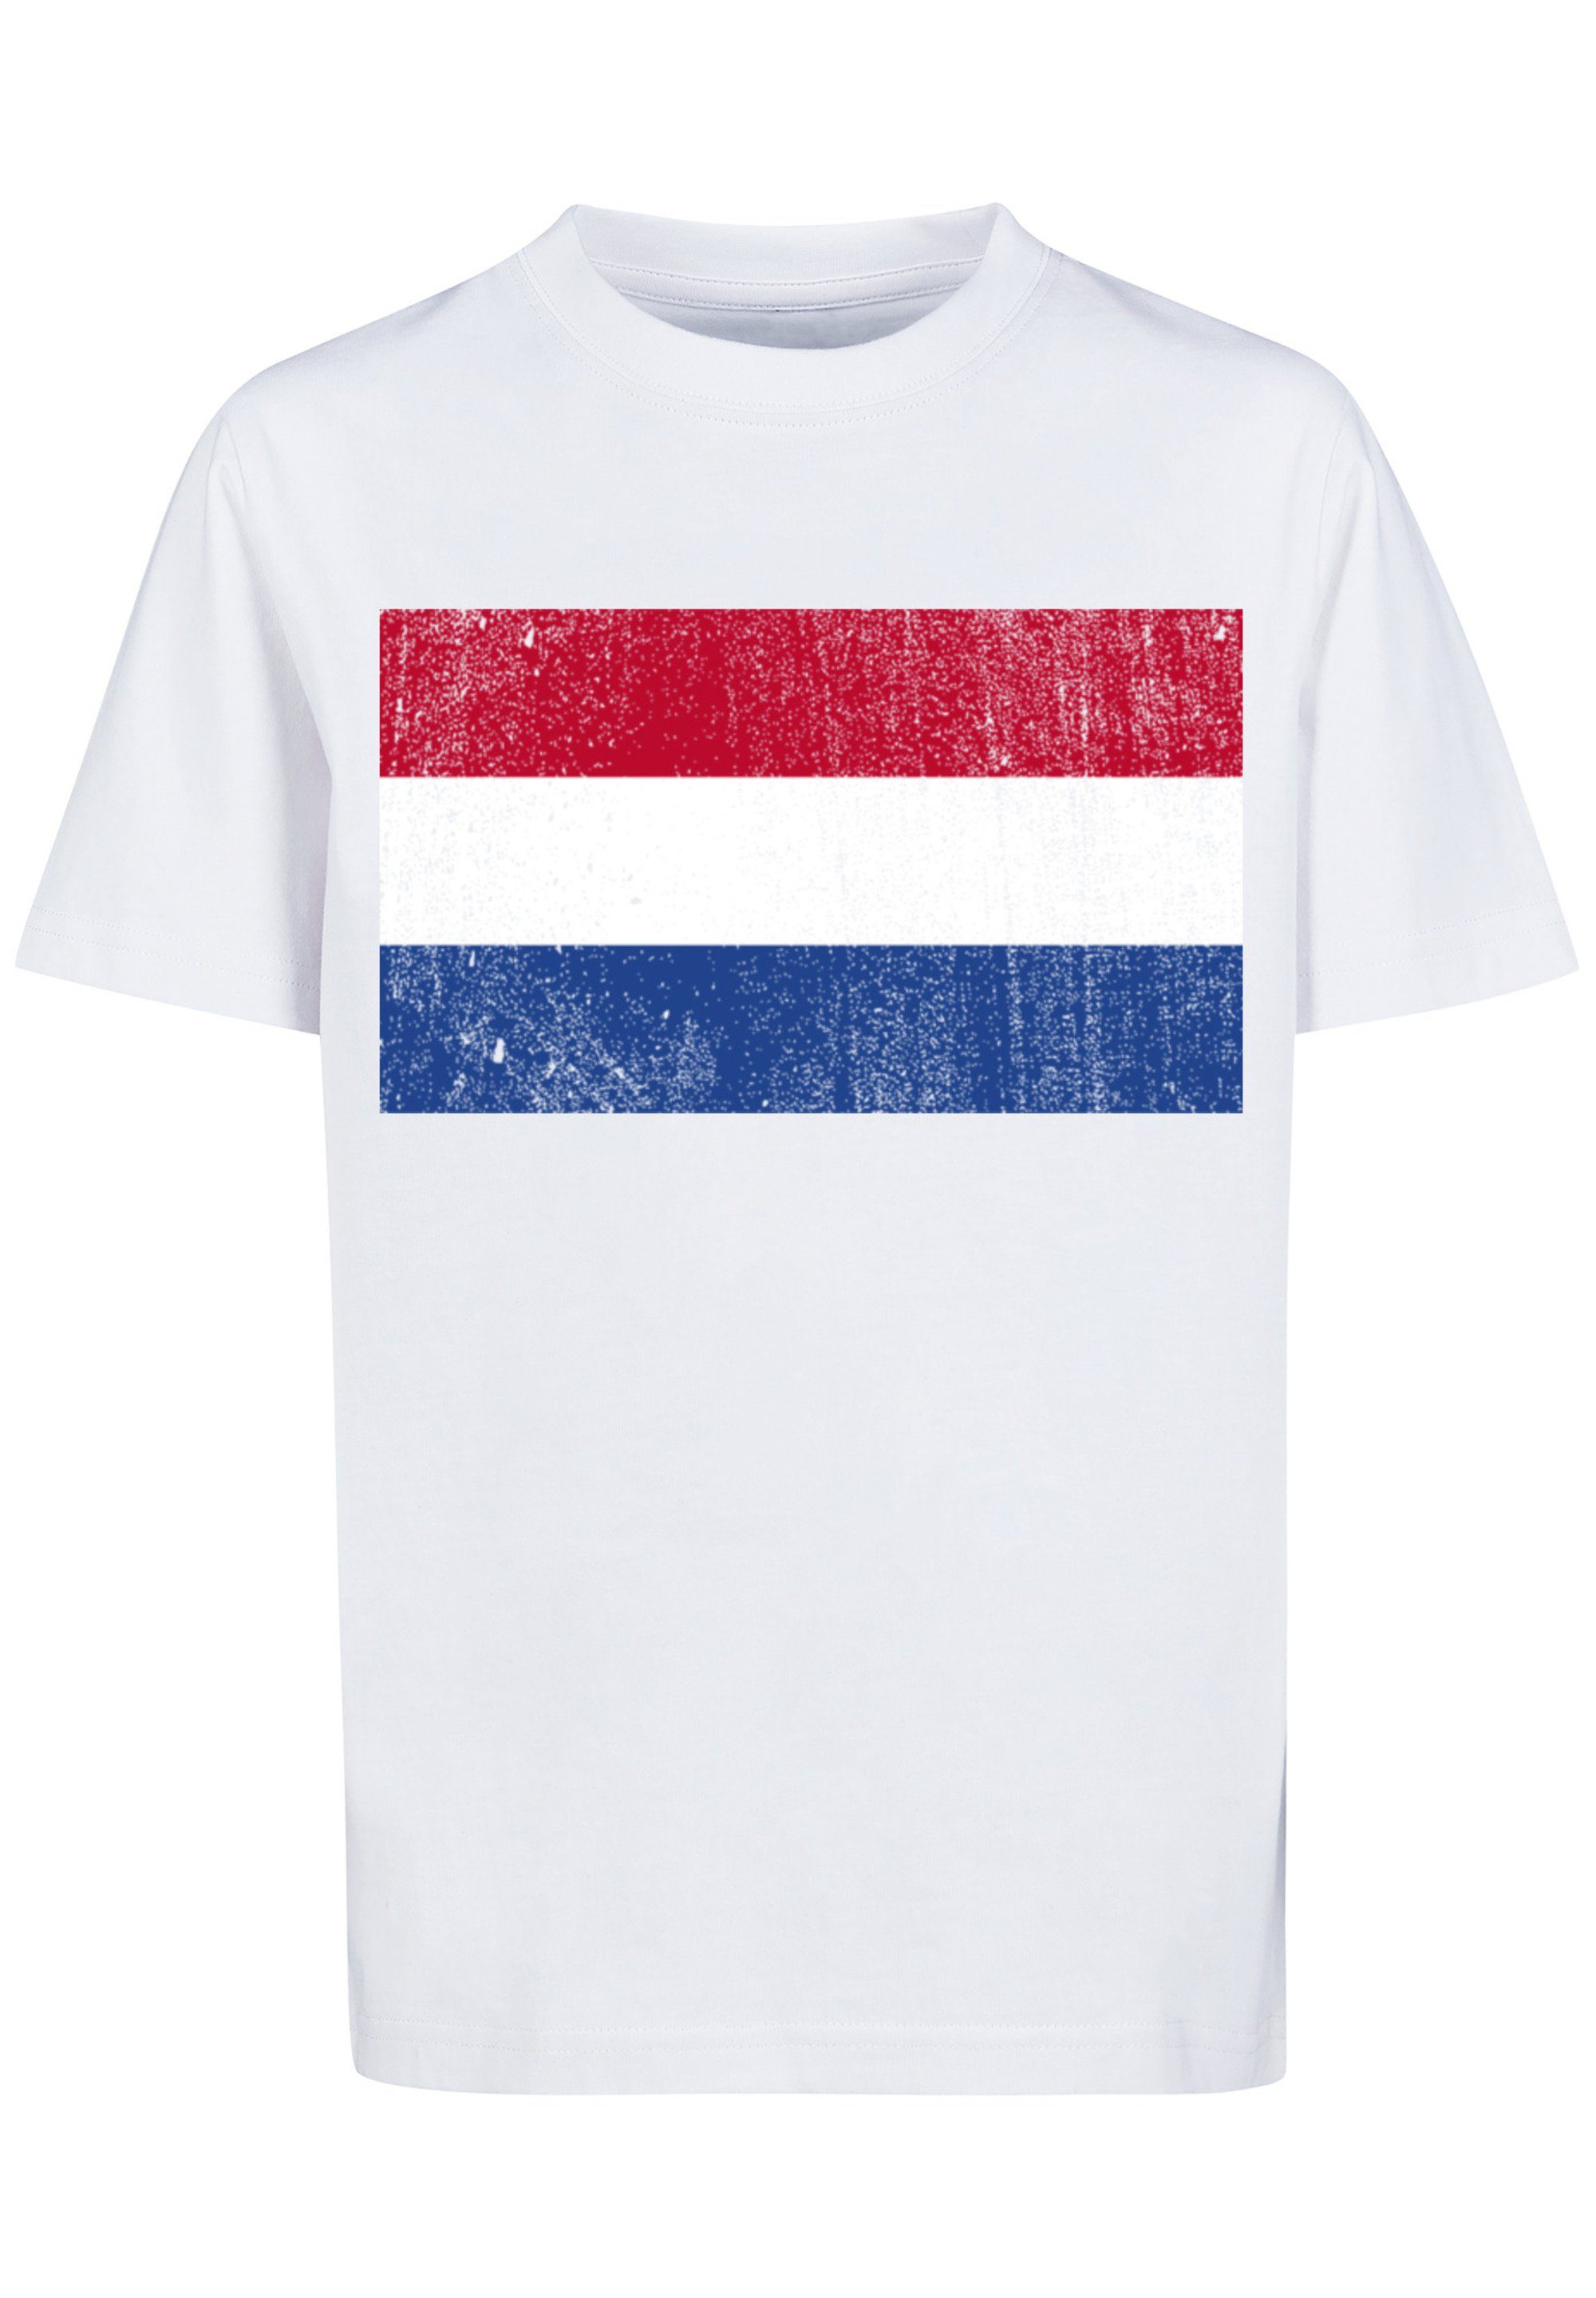 F4NT4STIC T-Shirt Netherlands NIederlande Holland Flagge distressed Print,  Das Model ist 145 cm groß und trägt Größe 145/152